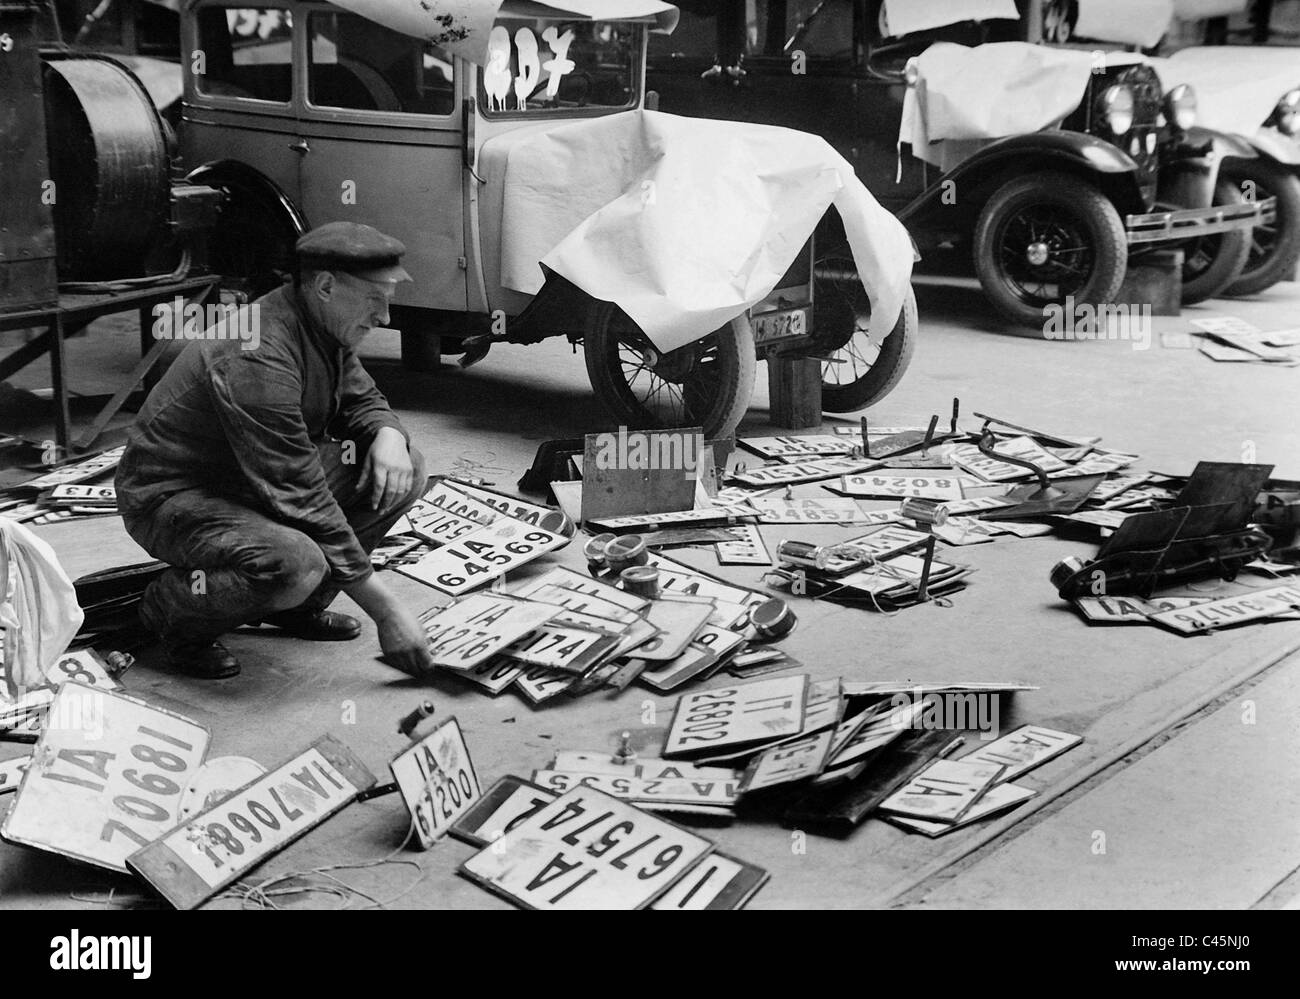 Les plaques de voitures radiées, 1932/33 Banque D'Images